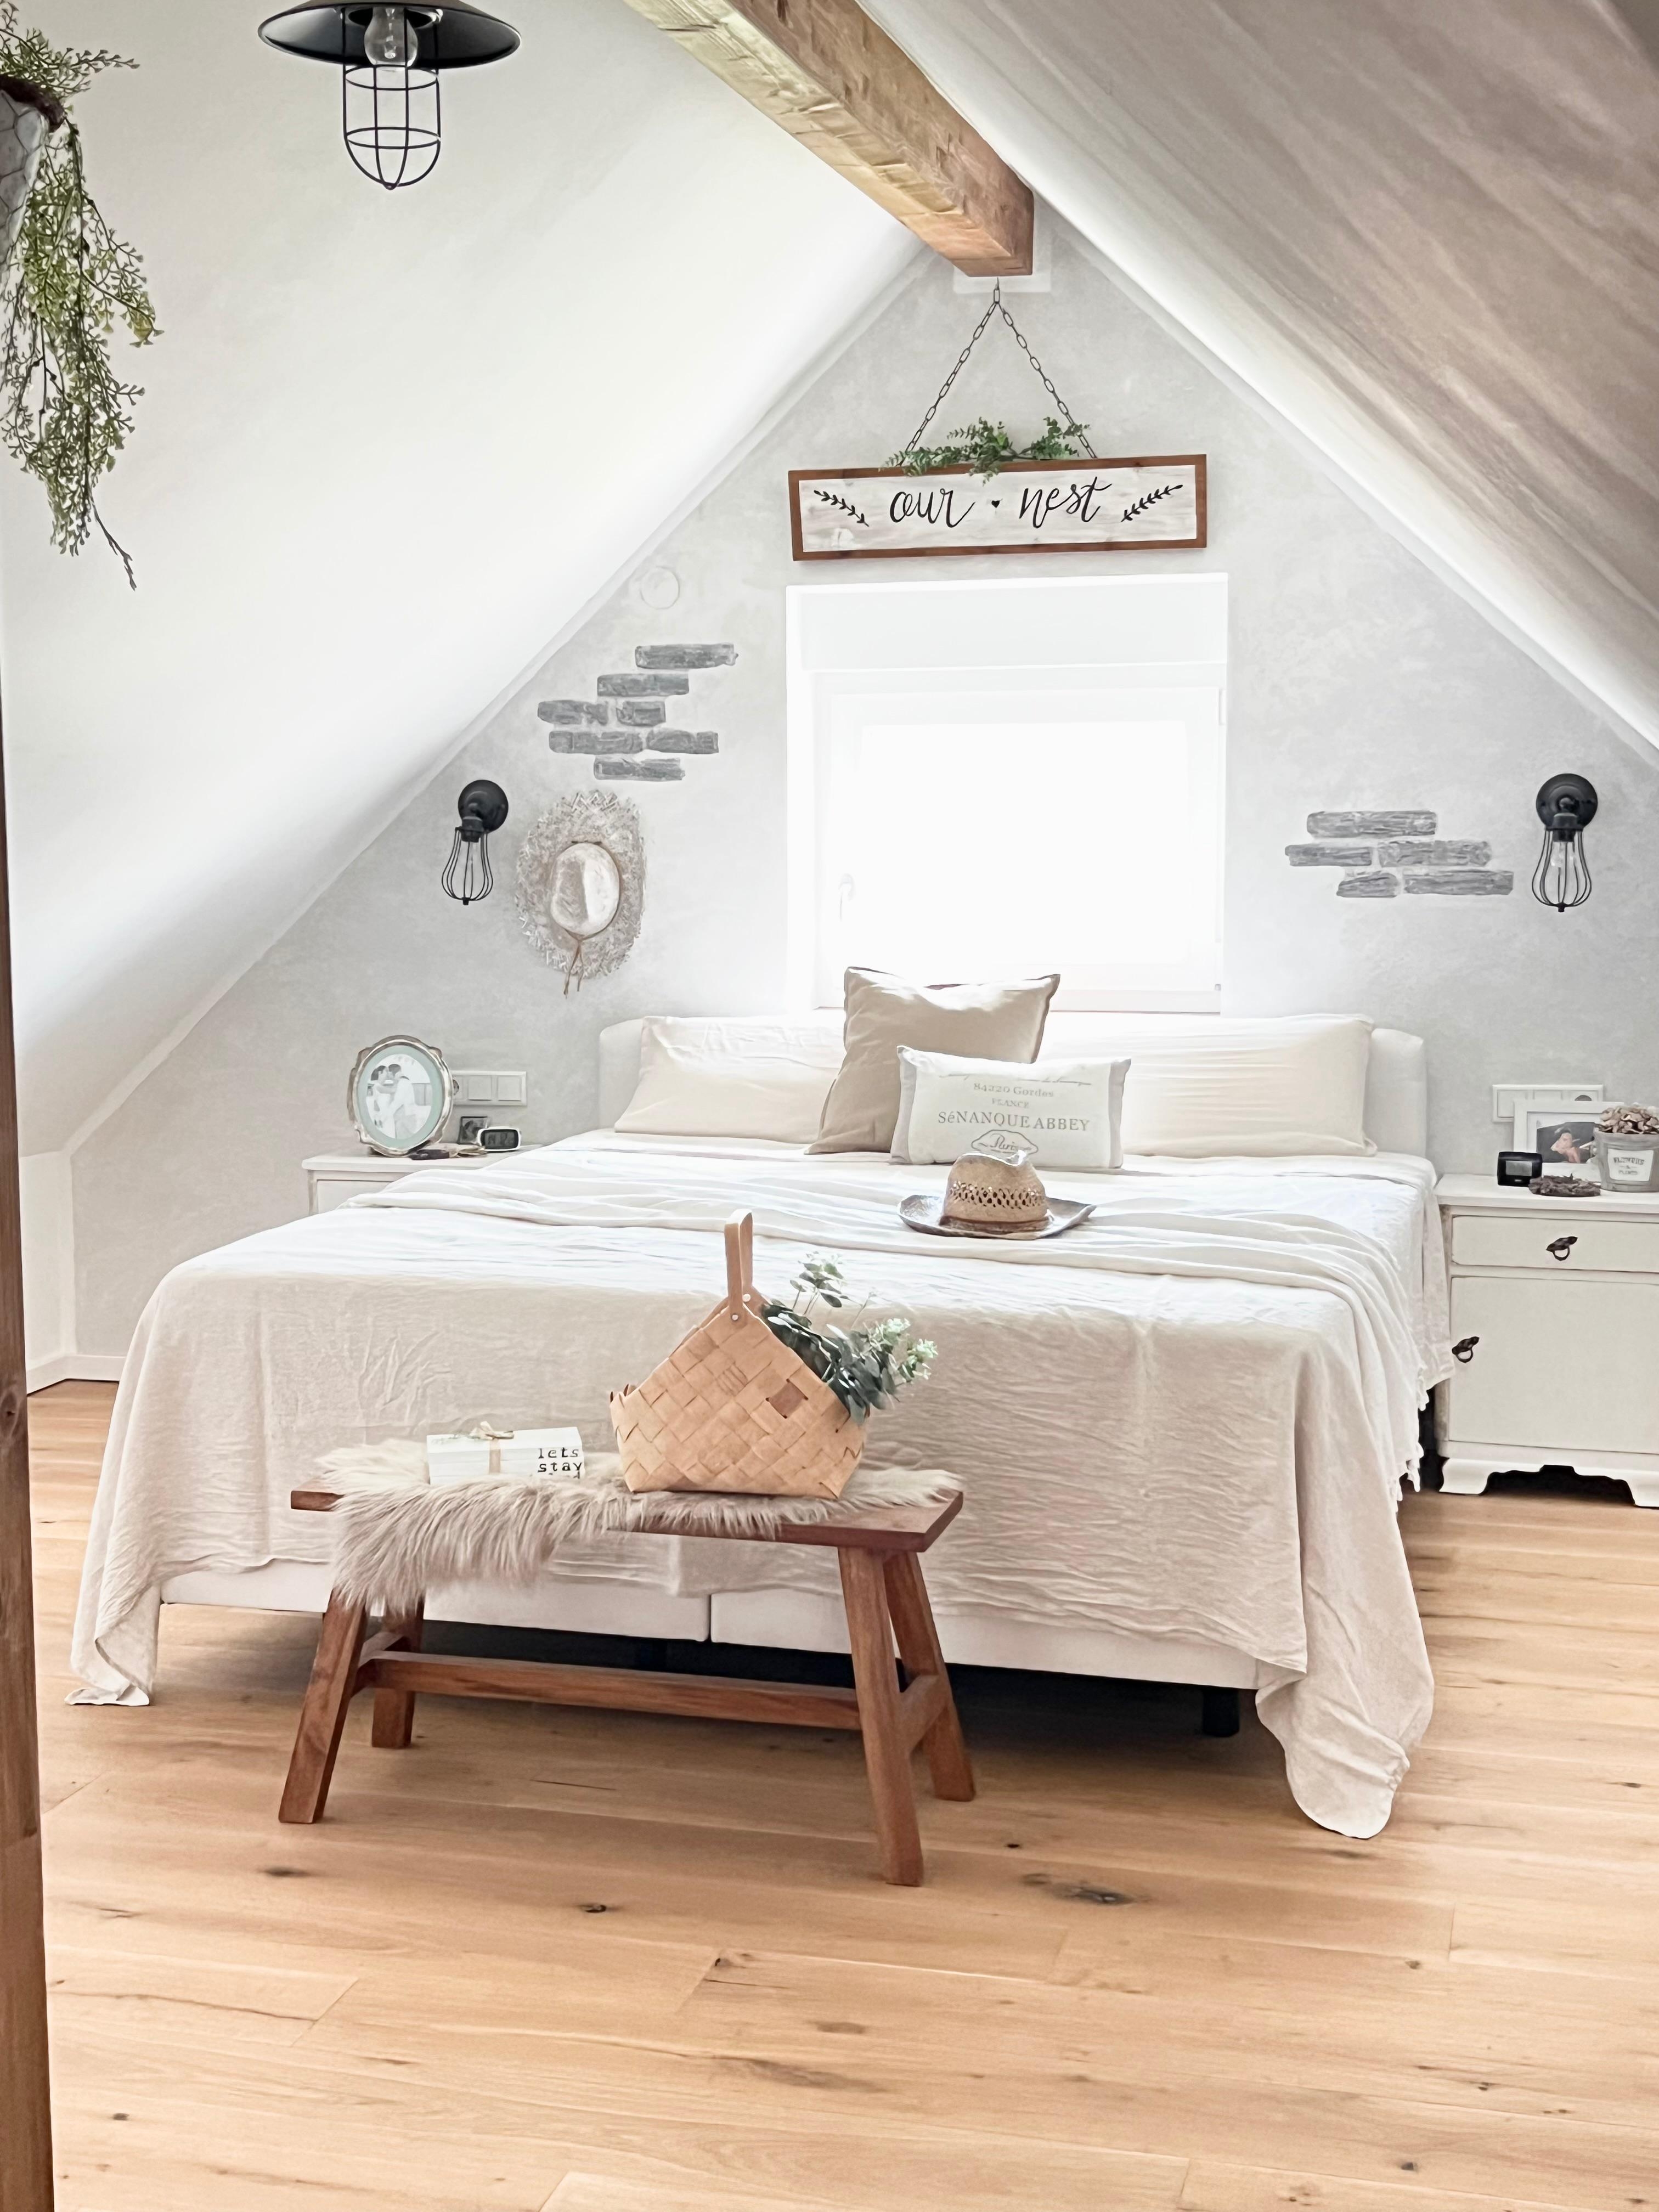 Gemütliches sommerliches Schlafzimmer im Boho Style 🥰
#couchstyle #dachschräge #boho #vintage #cozy #bedroom #schlafzimmer #sommer #leinen 